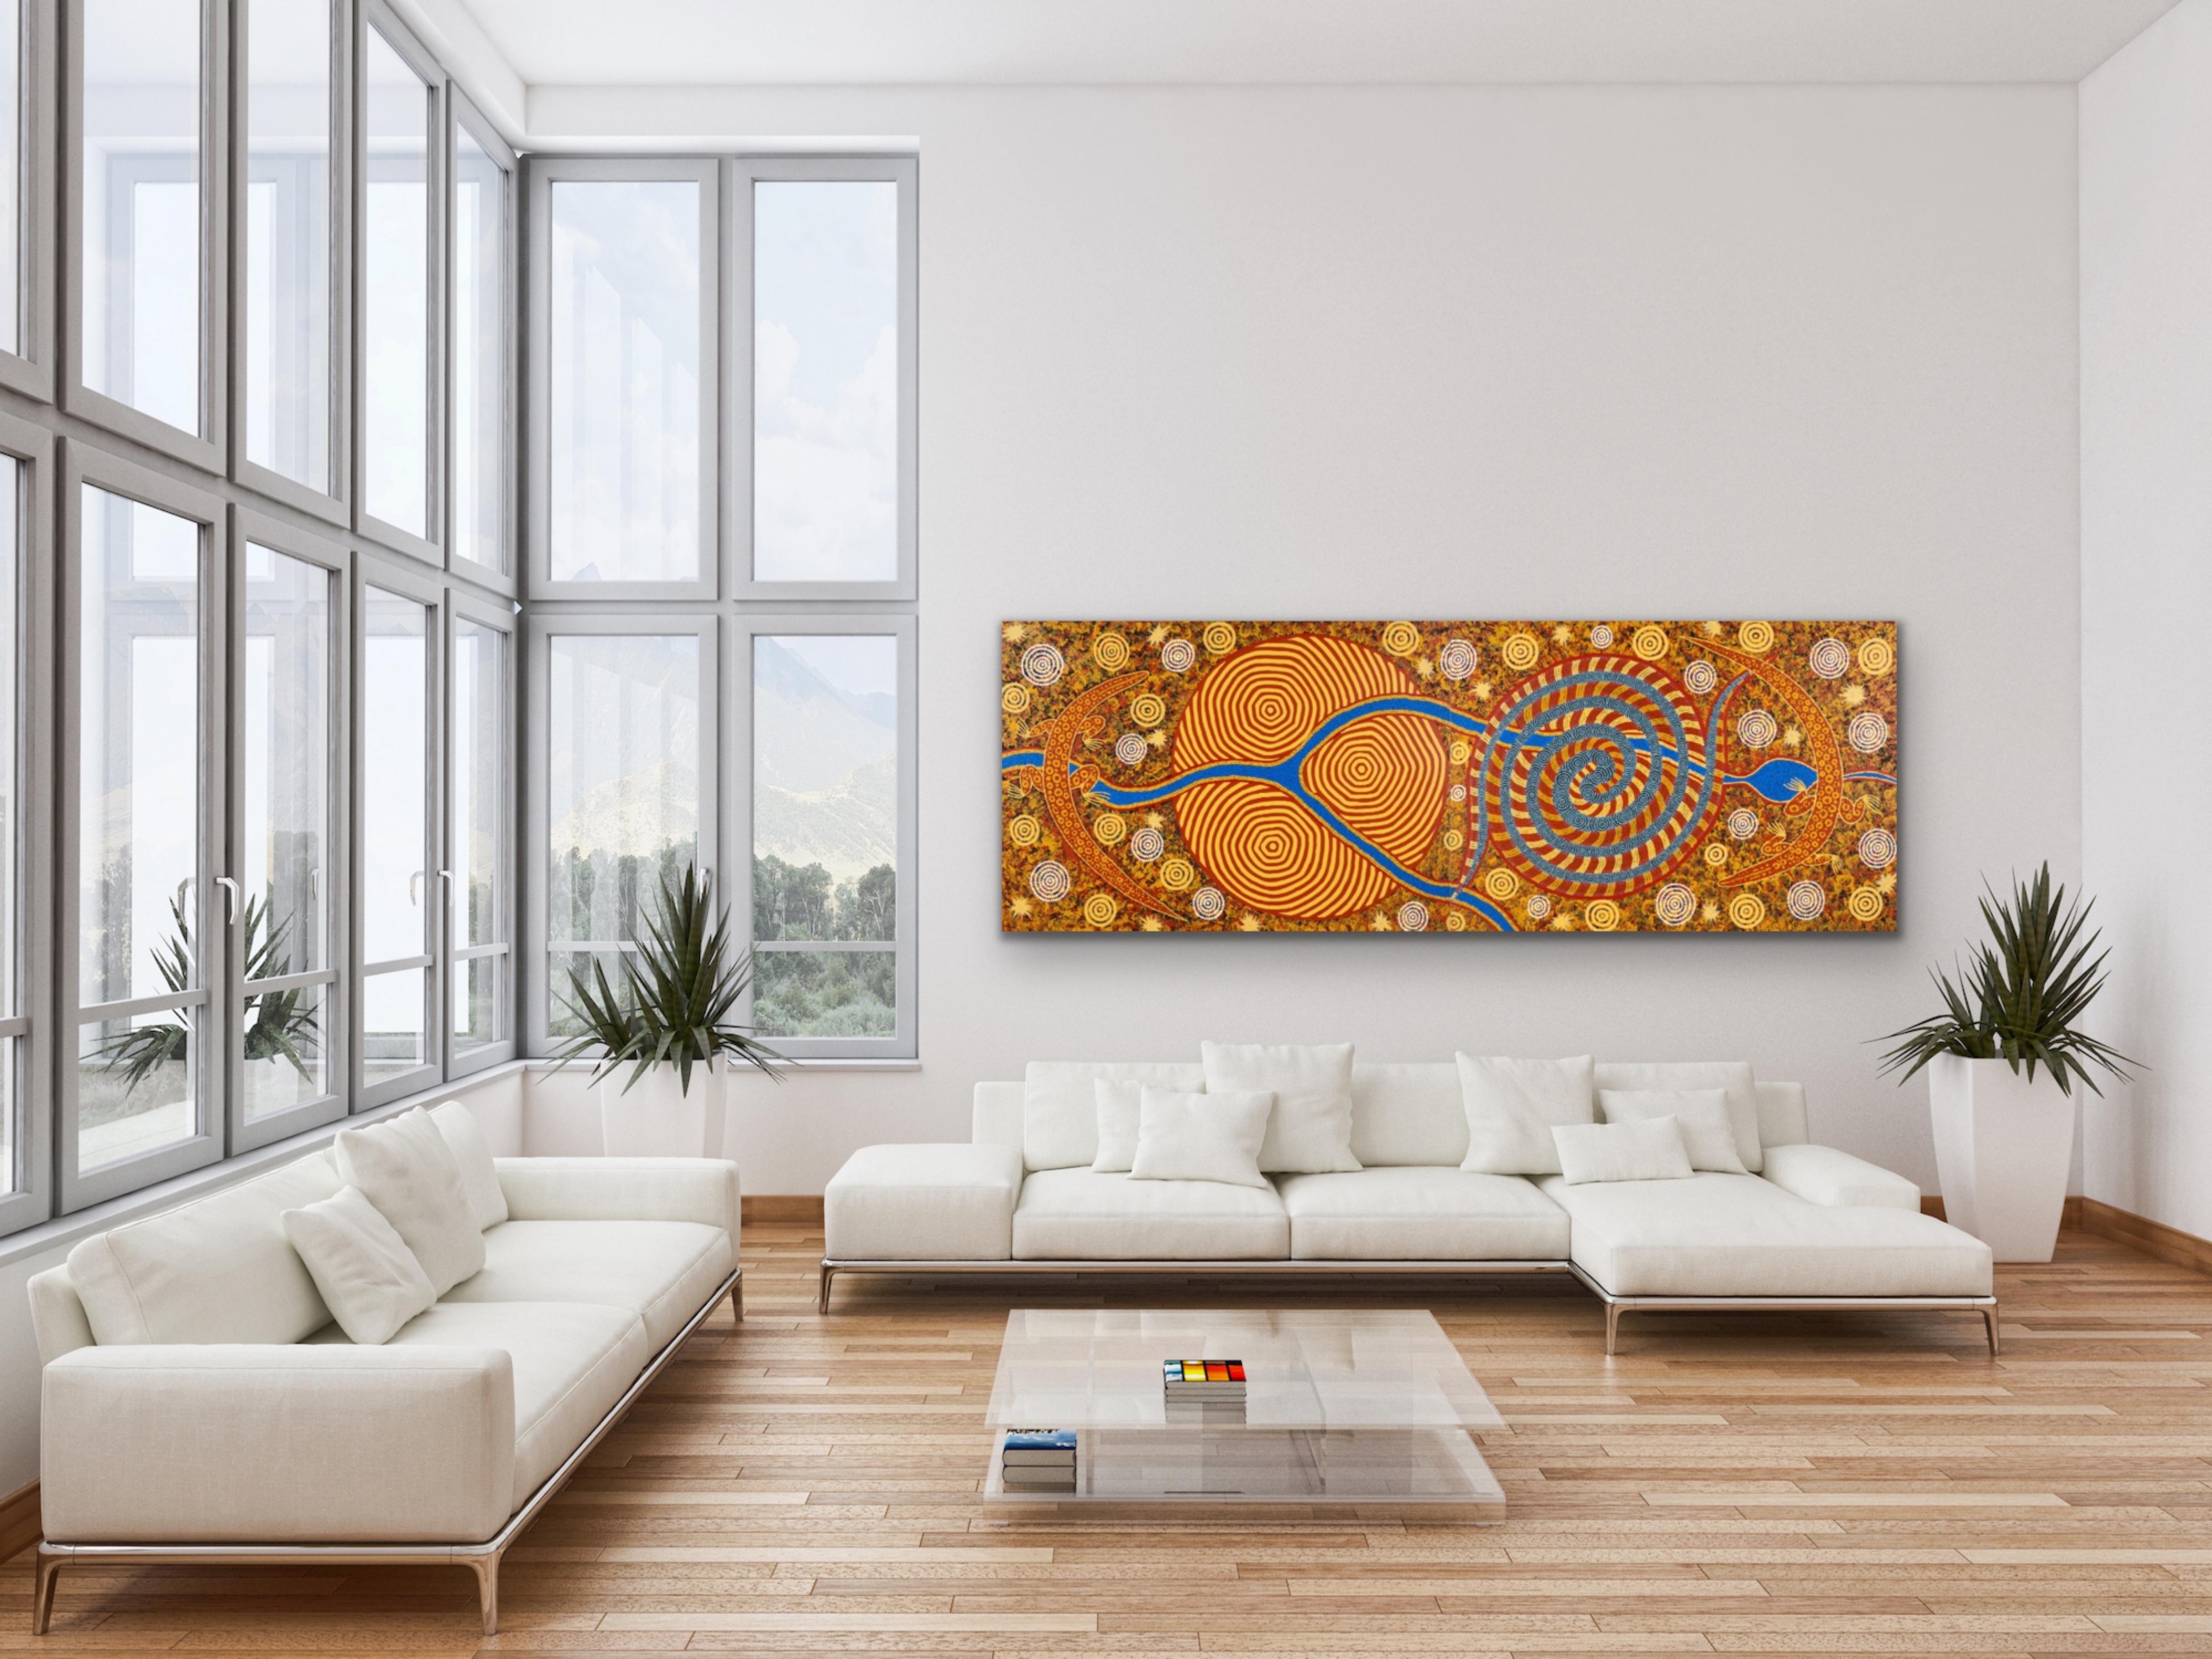 Dieses sehr große und farbenfrohe Aborigine-Gemälde ist ein Diptychon (2 Leinwände) und kann sowohl horizontal als auch vertikal ausgestellt werden.

Dieses Gemälde stellt die Entstehung des Lander-Fluss-Systems dar. Es enthält Elemente und